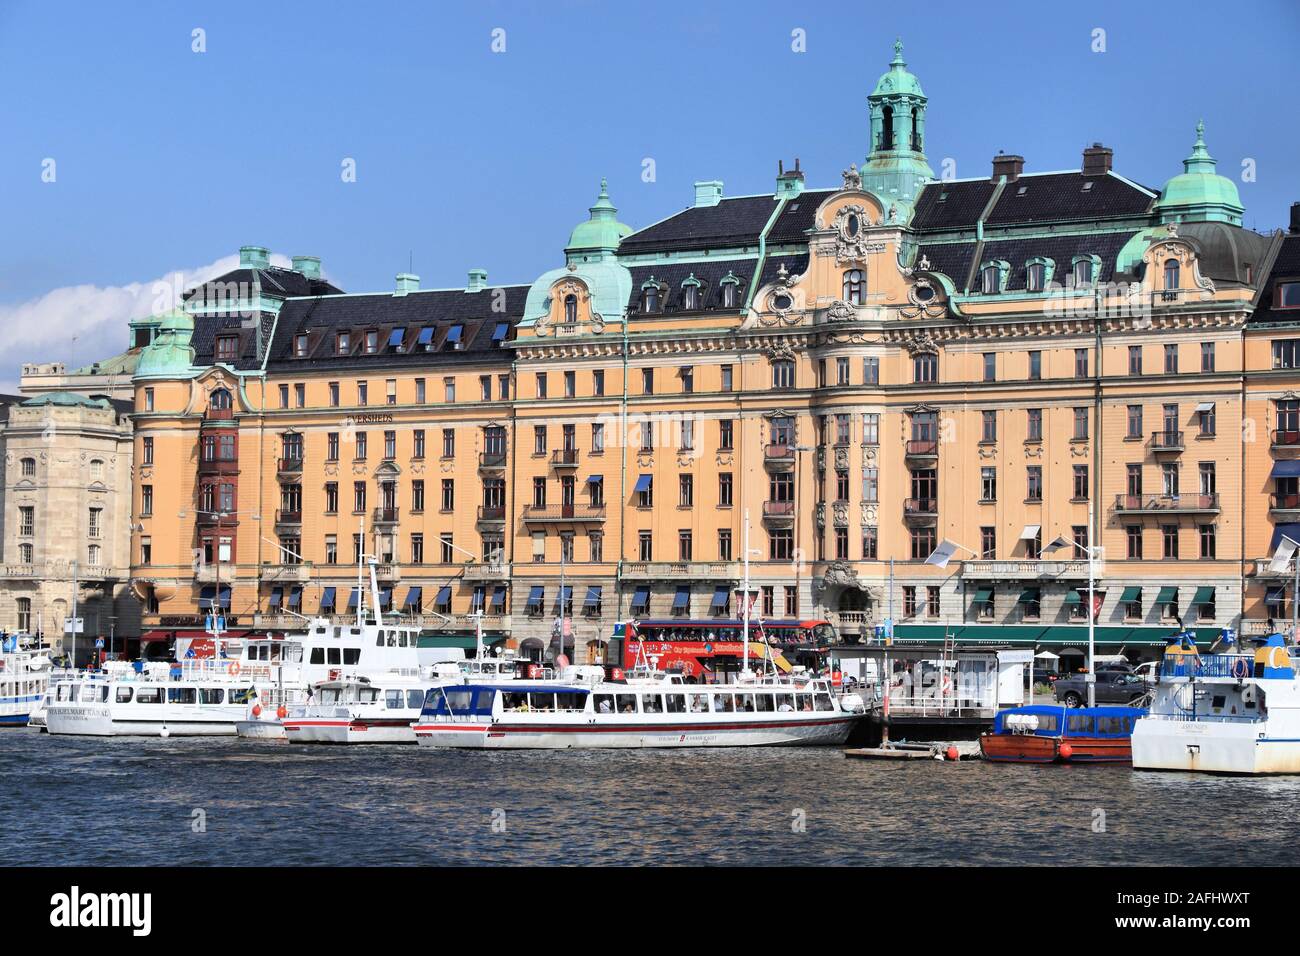 STOCKHOLM, Schweden - 24. AUGUST 2018: die Stockholmer Skyline der Stadt in Schweden. Strandvagen Waterfront im Stadtteil Ostermalm. Stockfoto